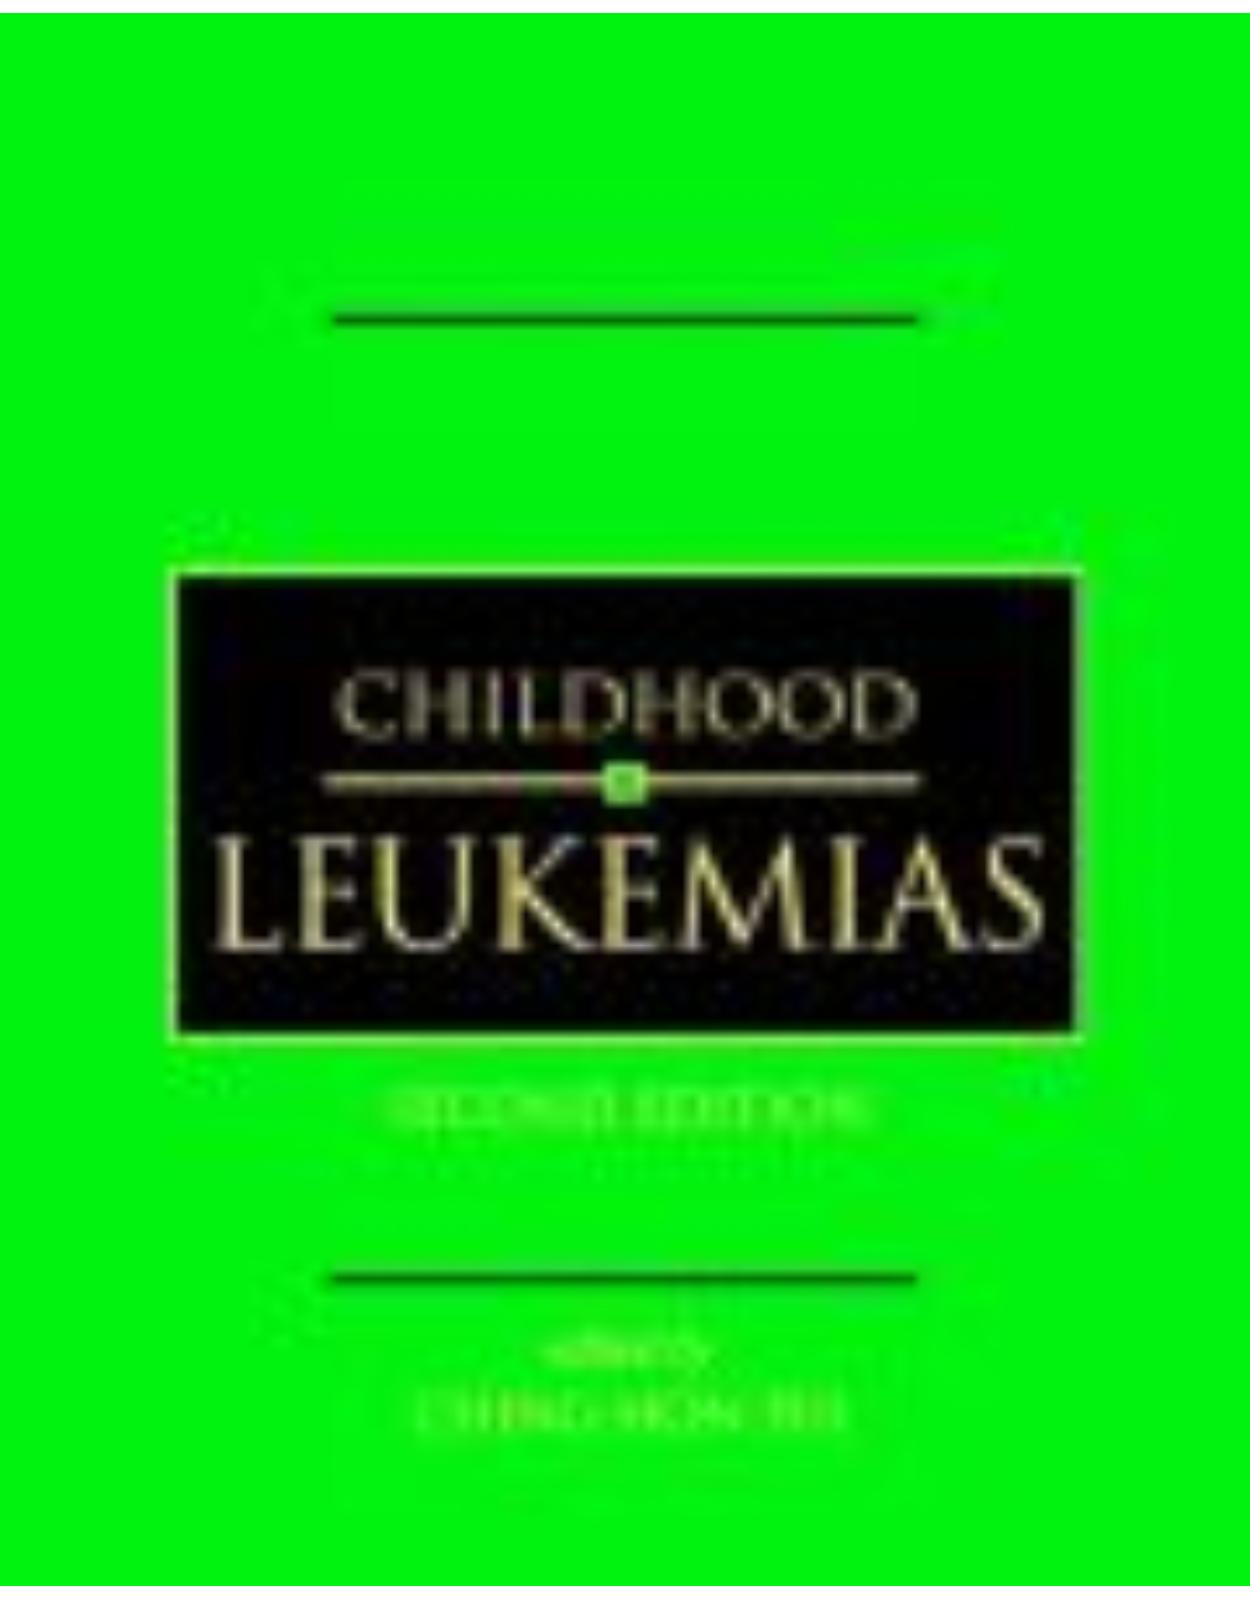 Childhood Leukemias (2nd ed)